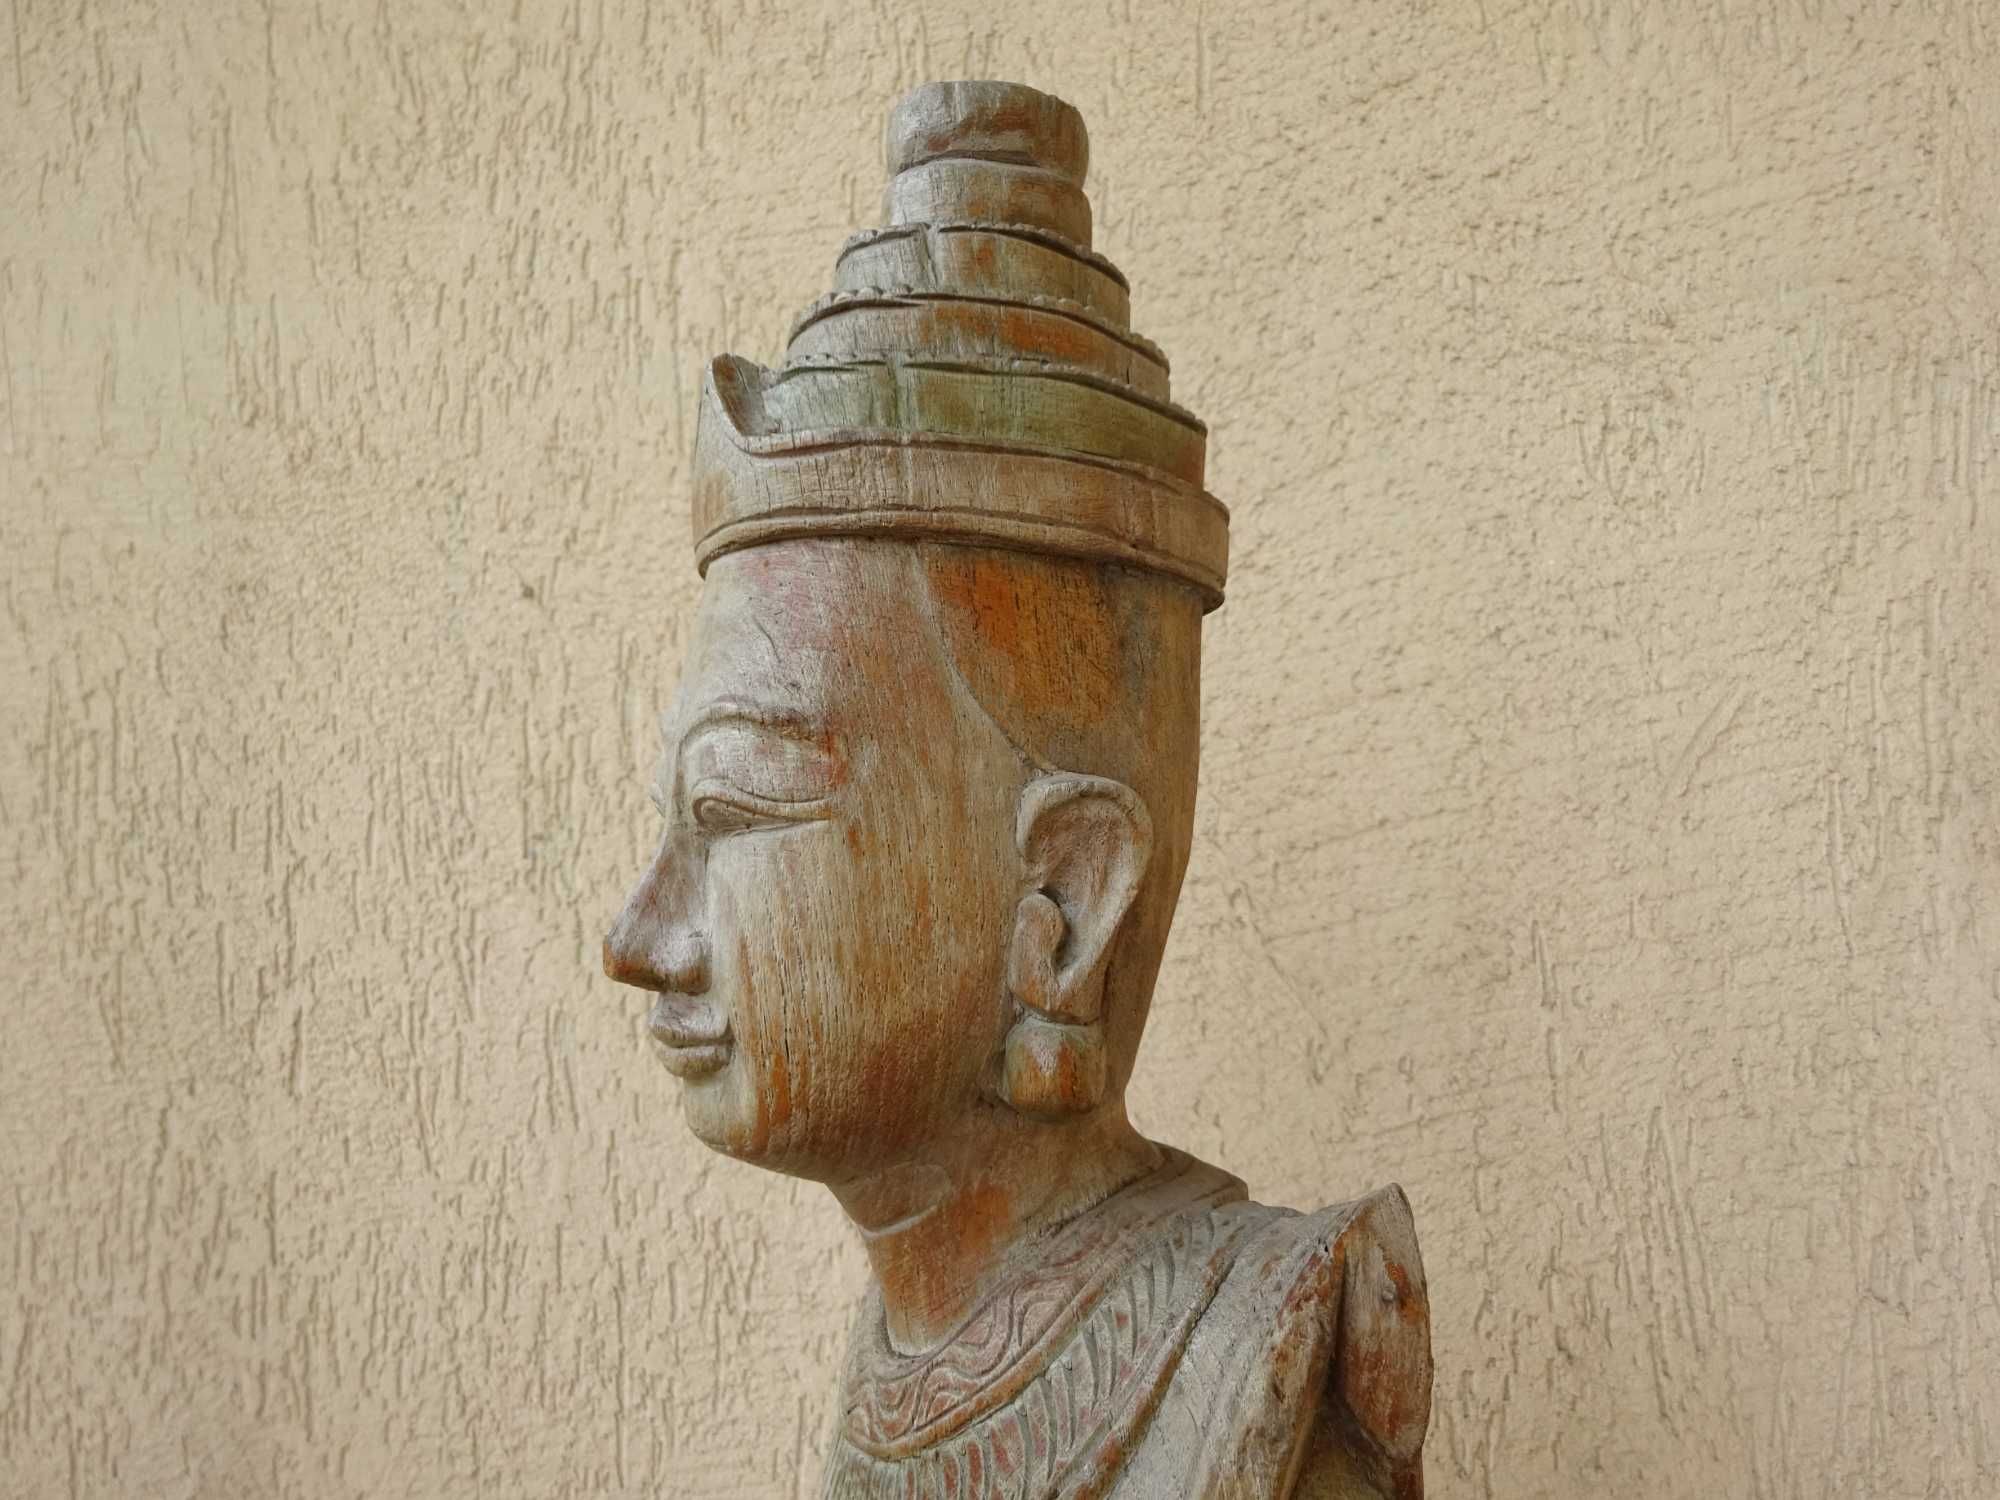 Statueta asiatica veche/ Inger de templu/ Lemn sculptat, Thailanda